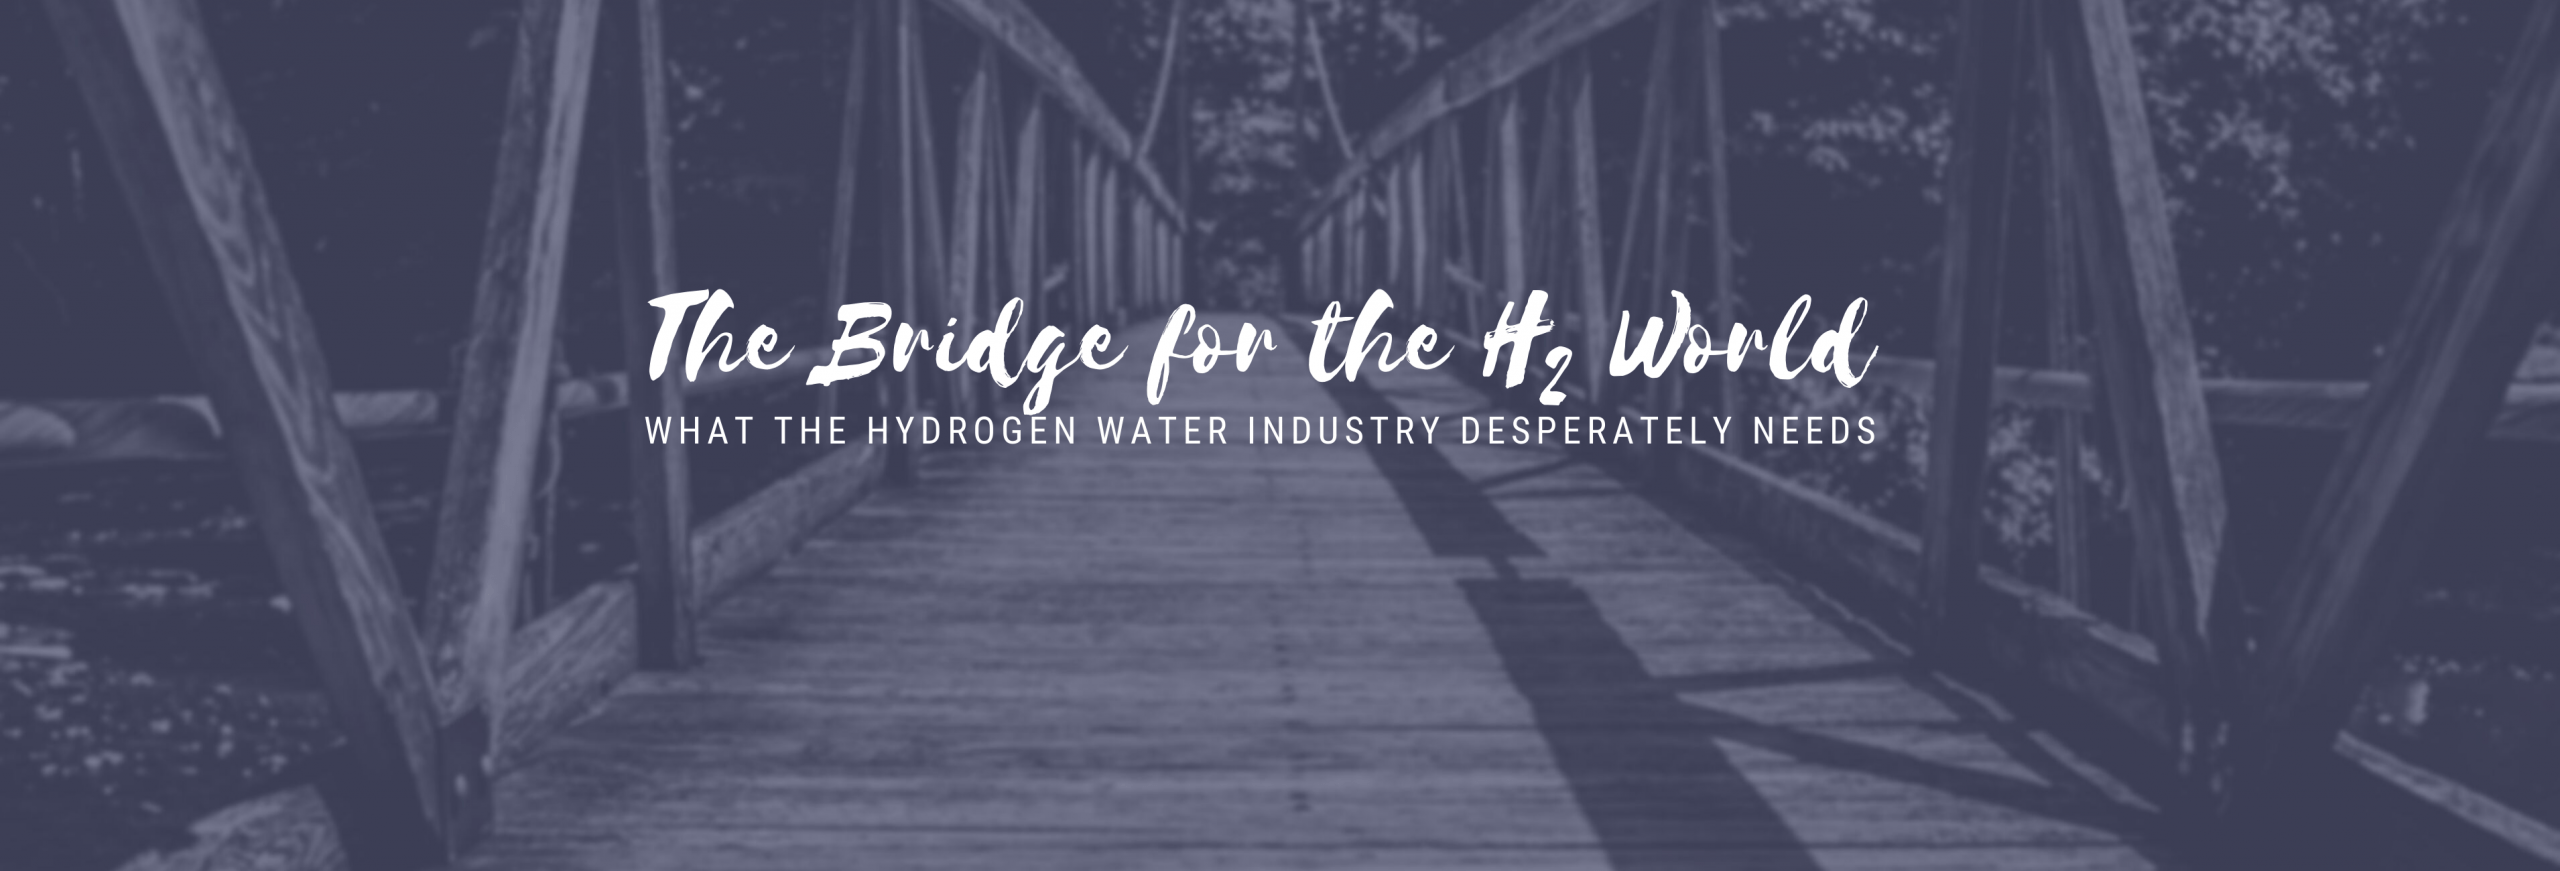 hydrogen water blog post